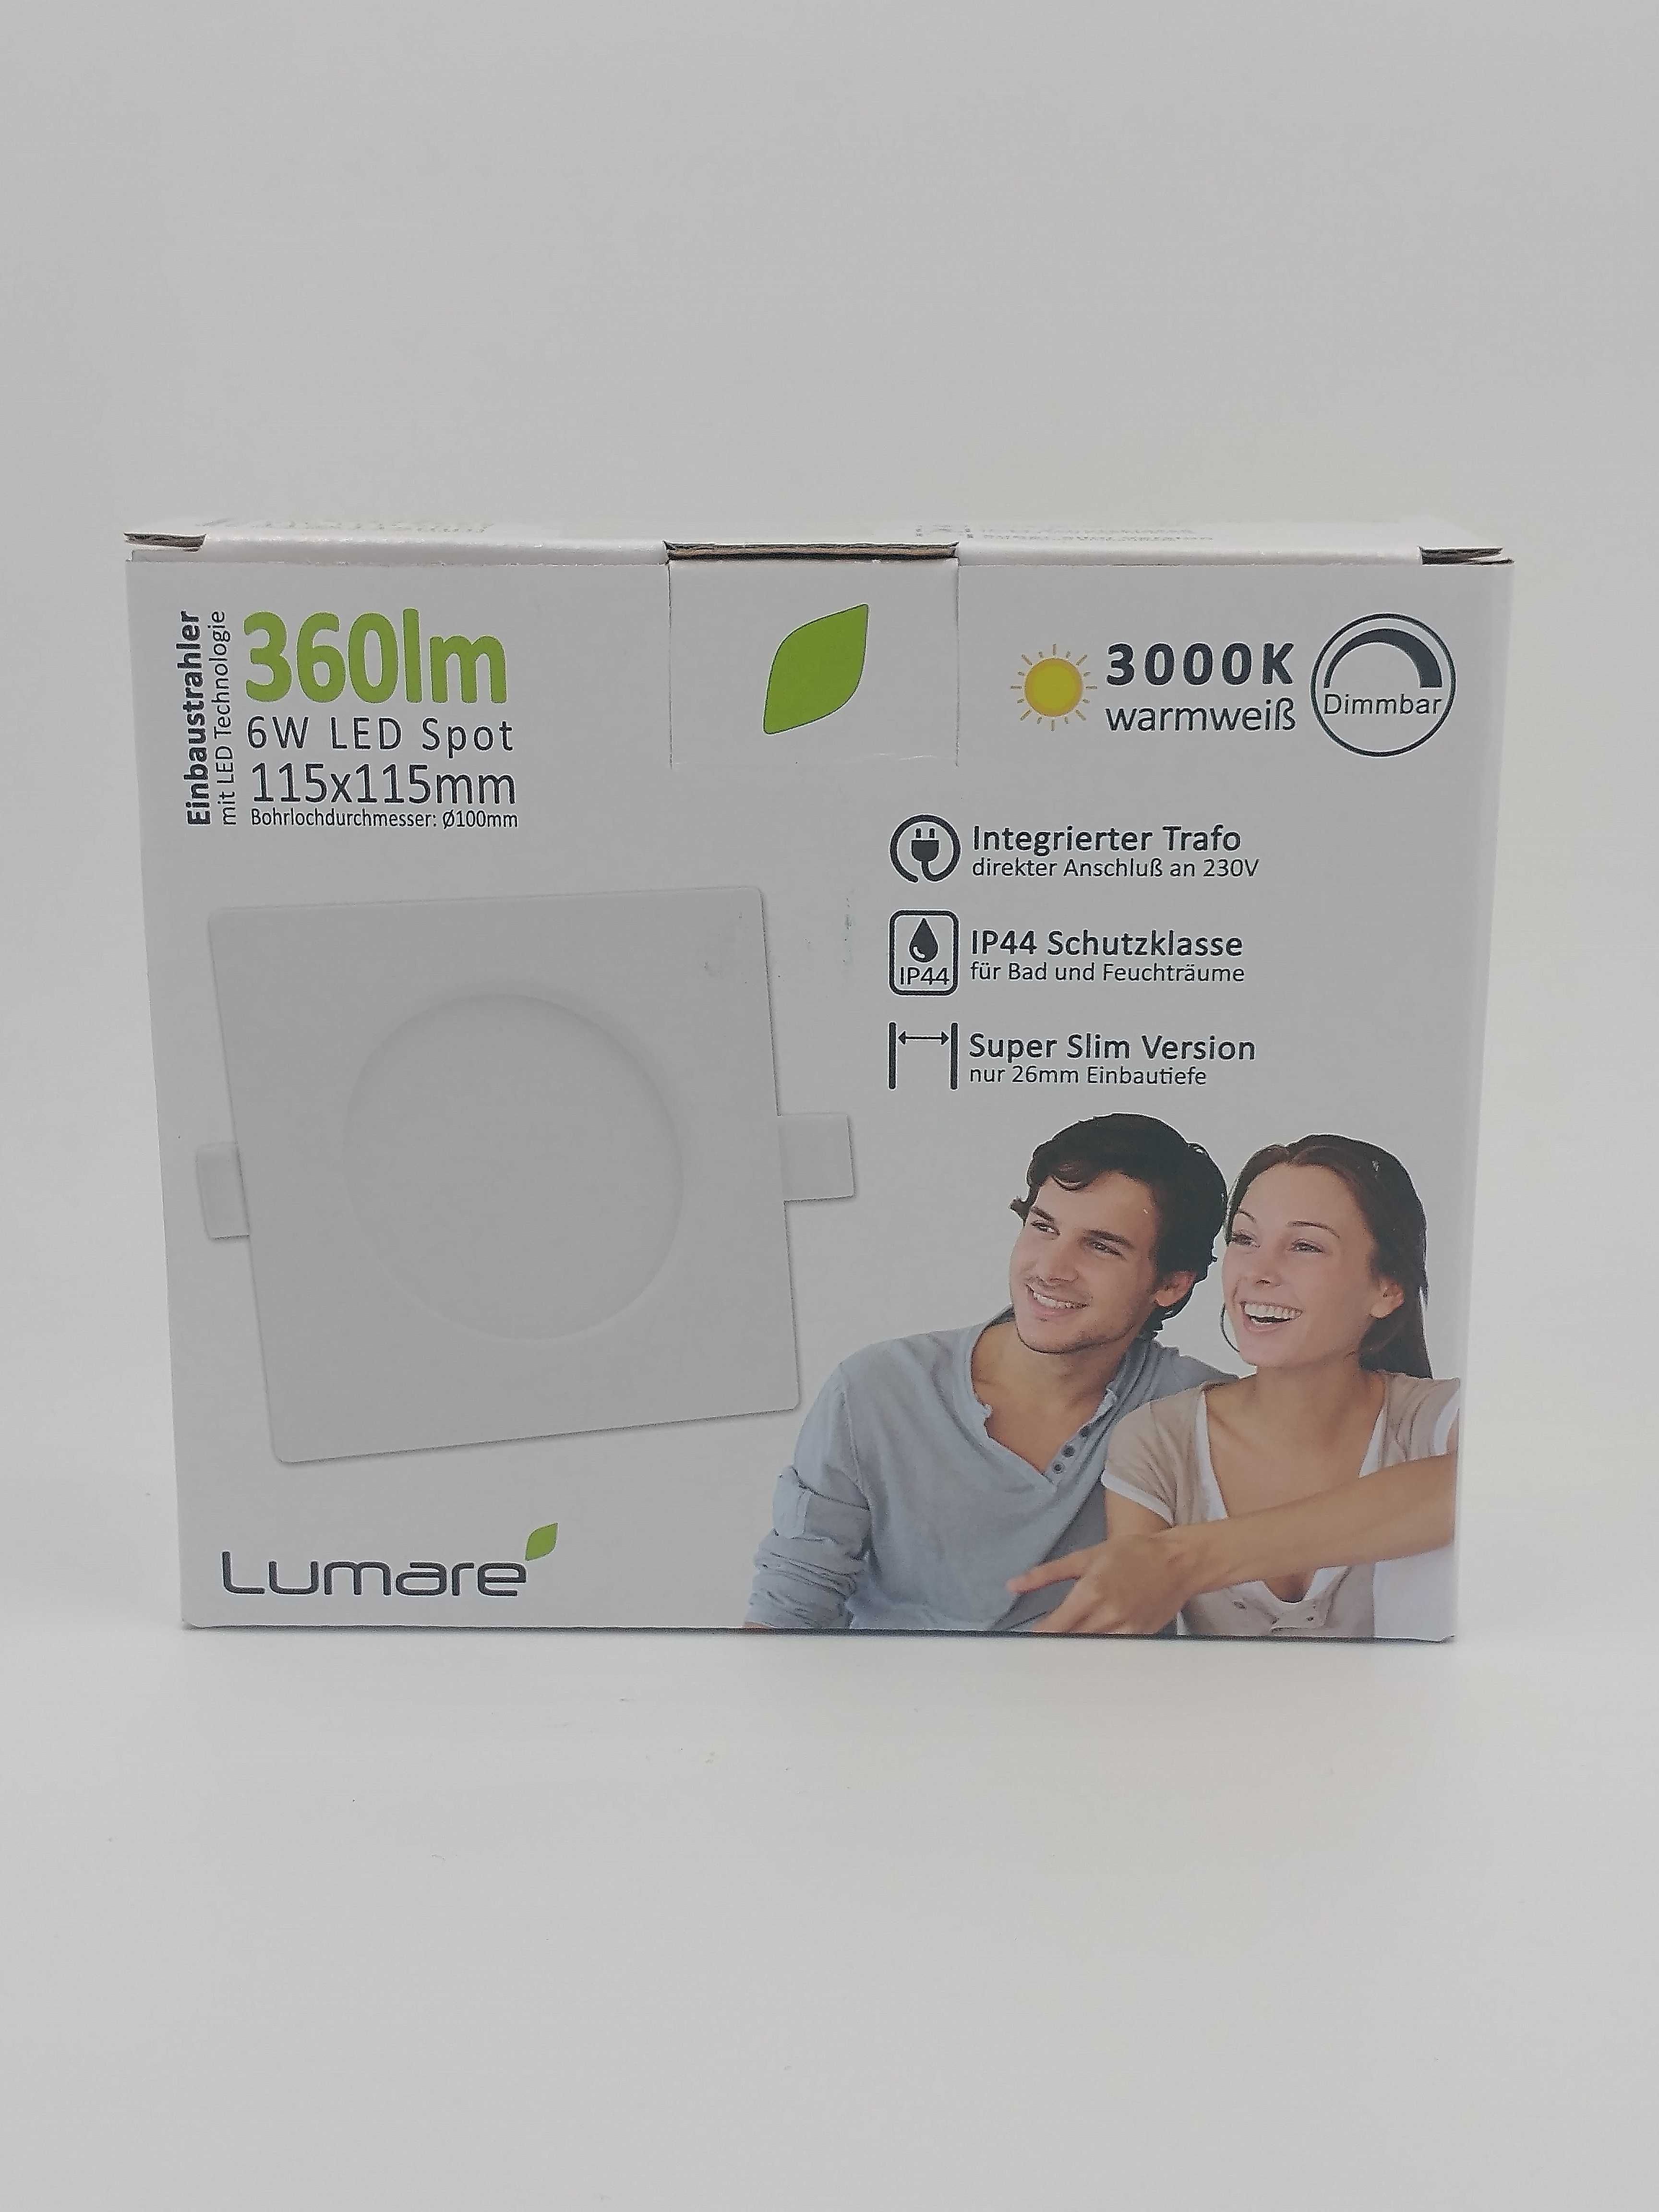 Lampa LED 6W Spot Lumare 3000 K., 360 lm, 115x115mm biała do zabudowy